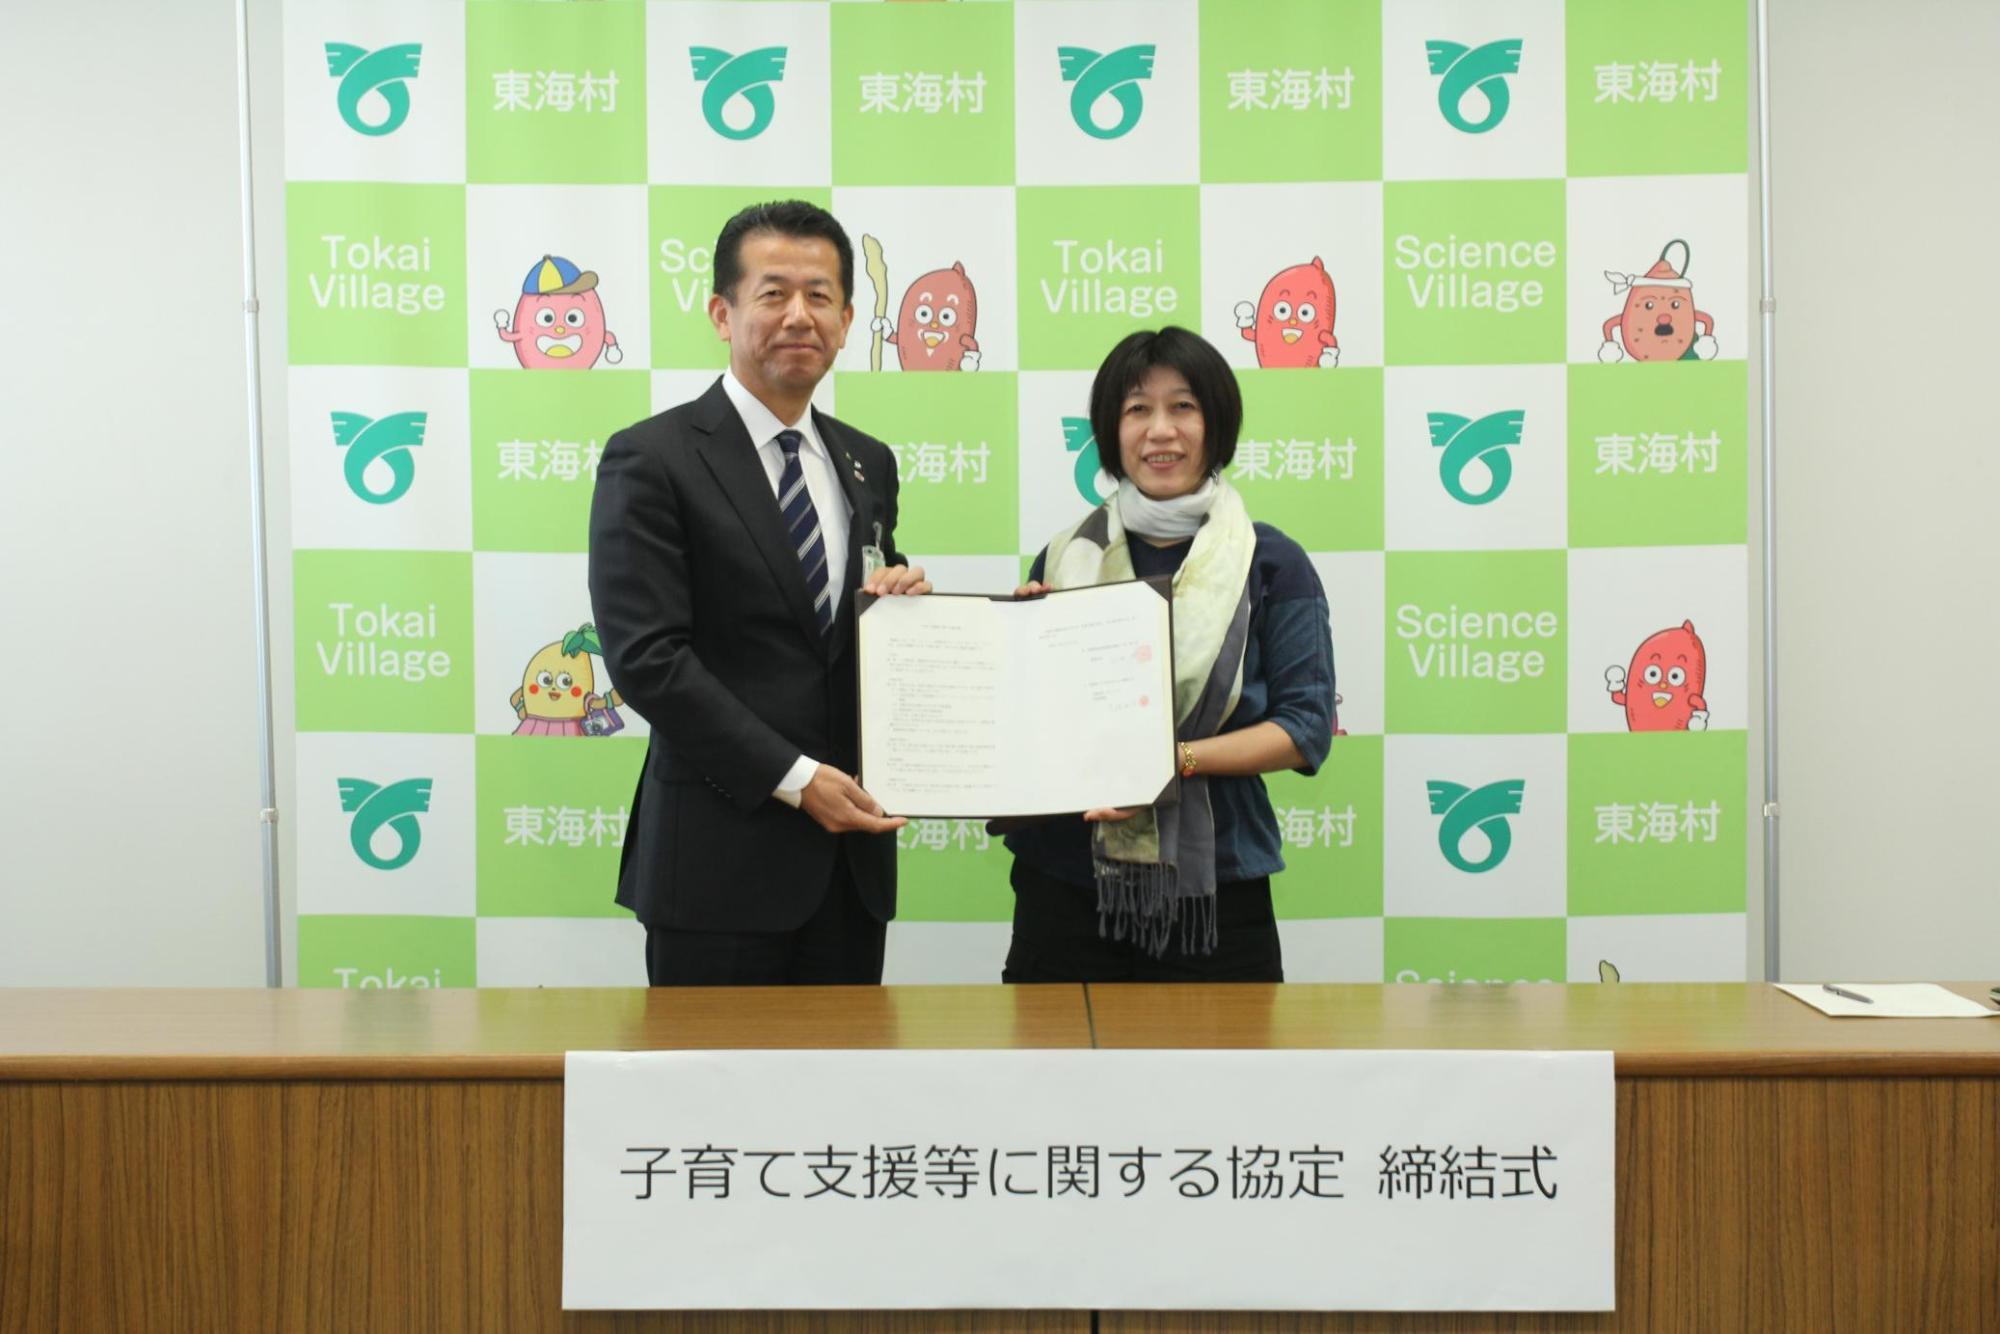 東海村村長と有限会社モーハウスの代表が2人で協定書を掲げている写真